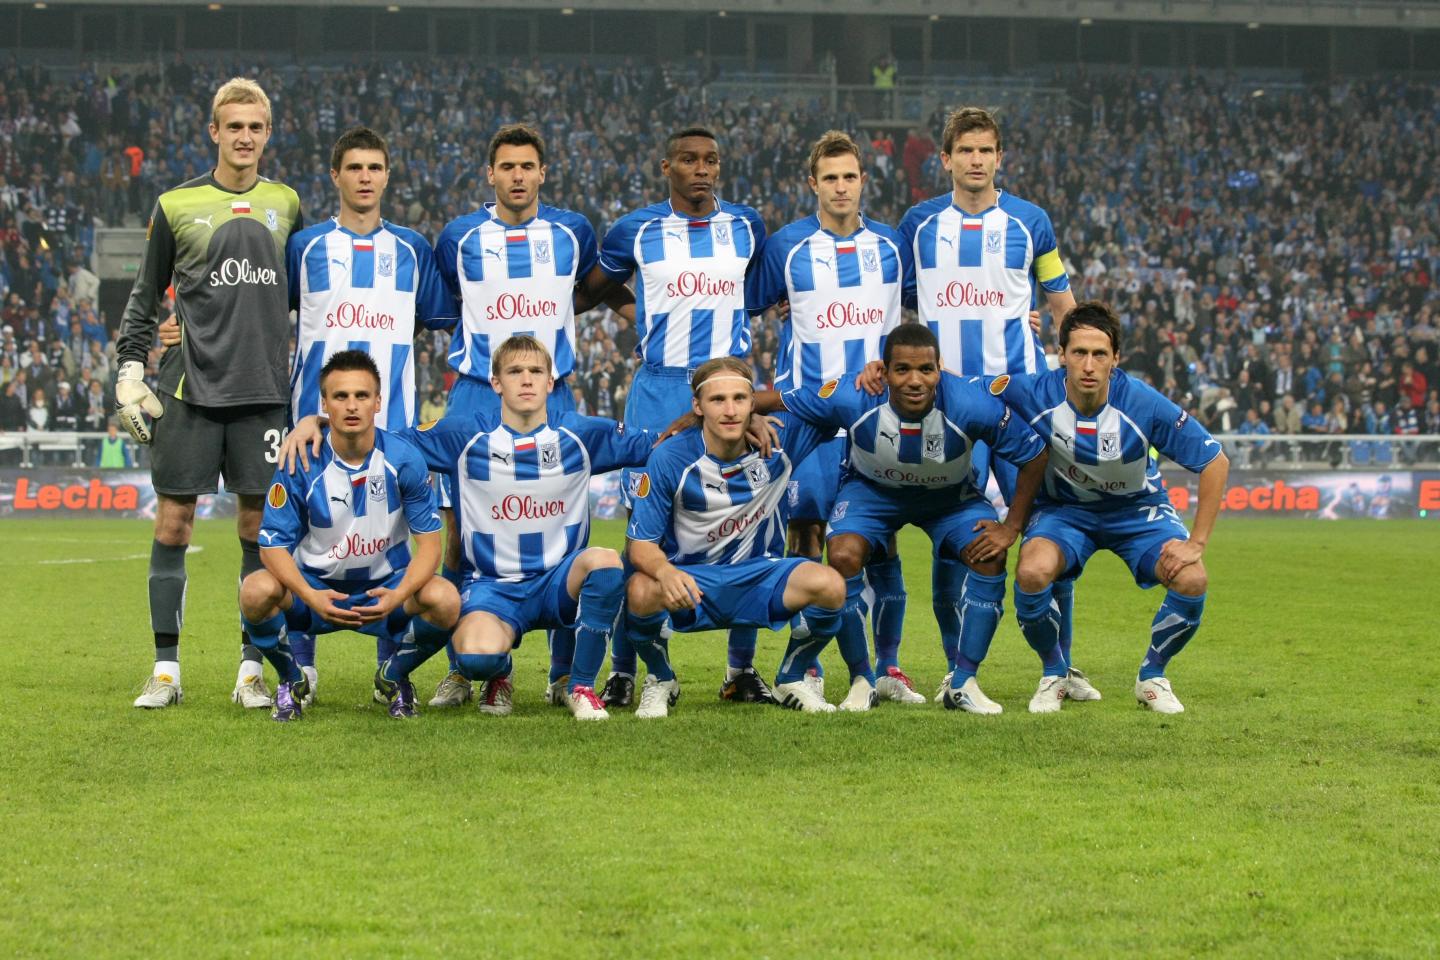 Lech Poznań - FC Salzburg 2:0 (30.09.2010)